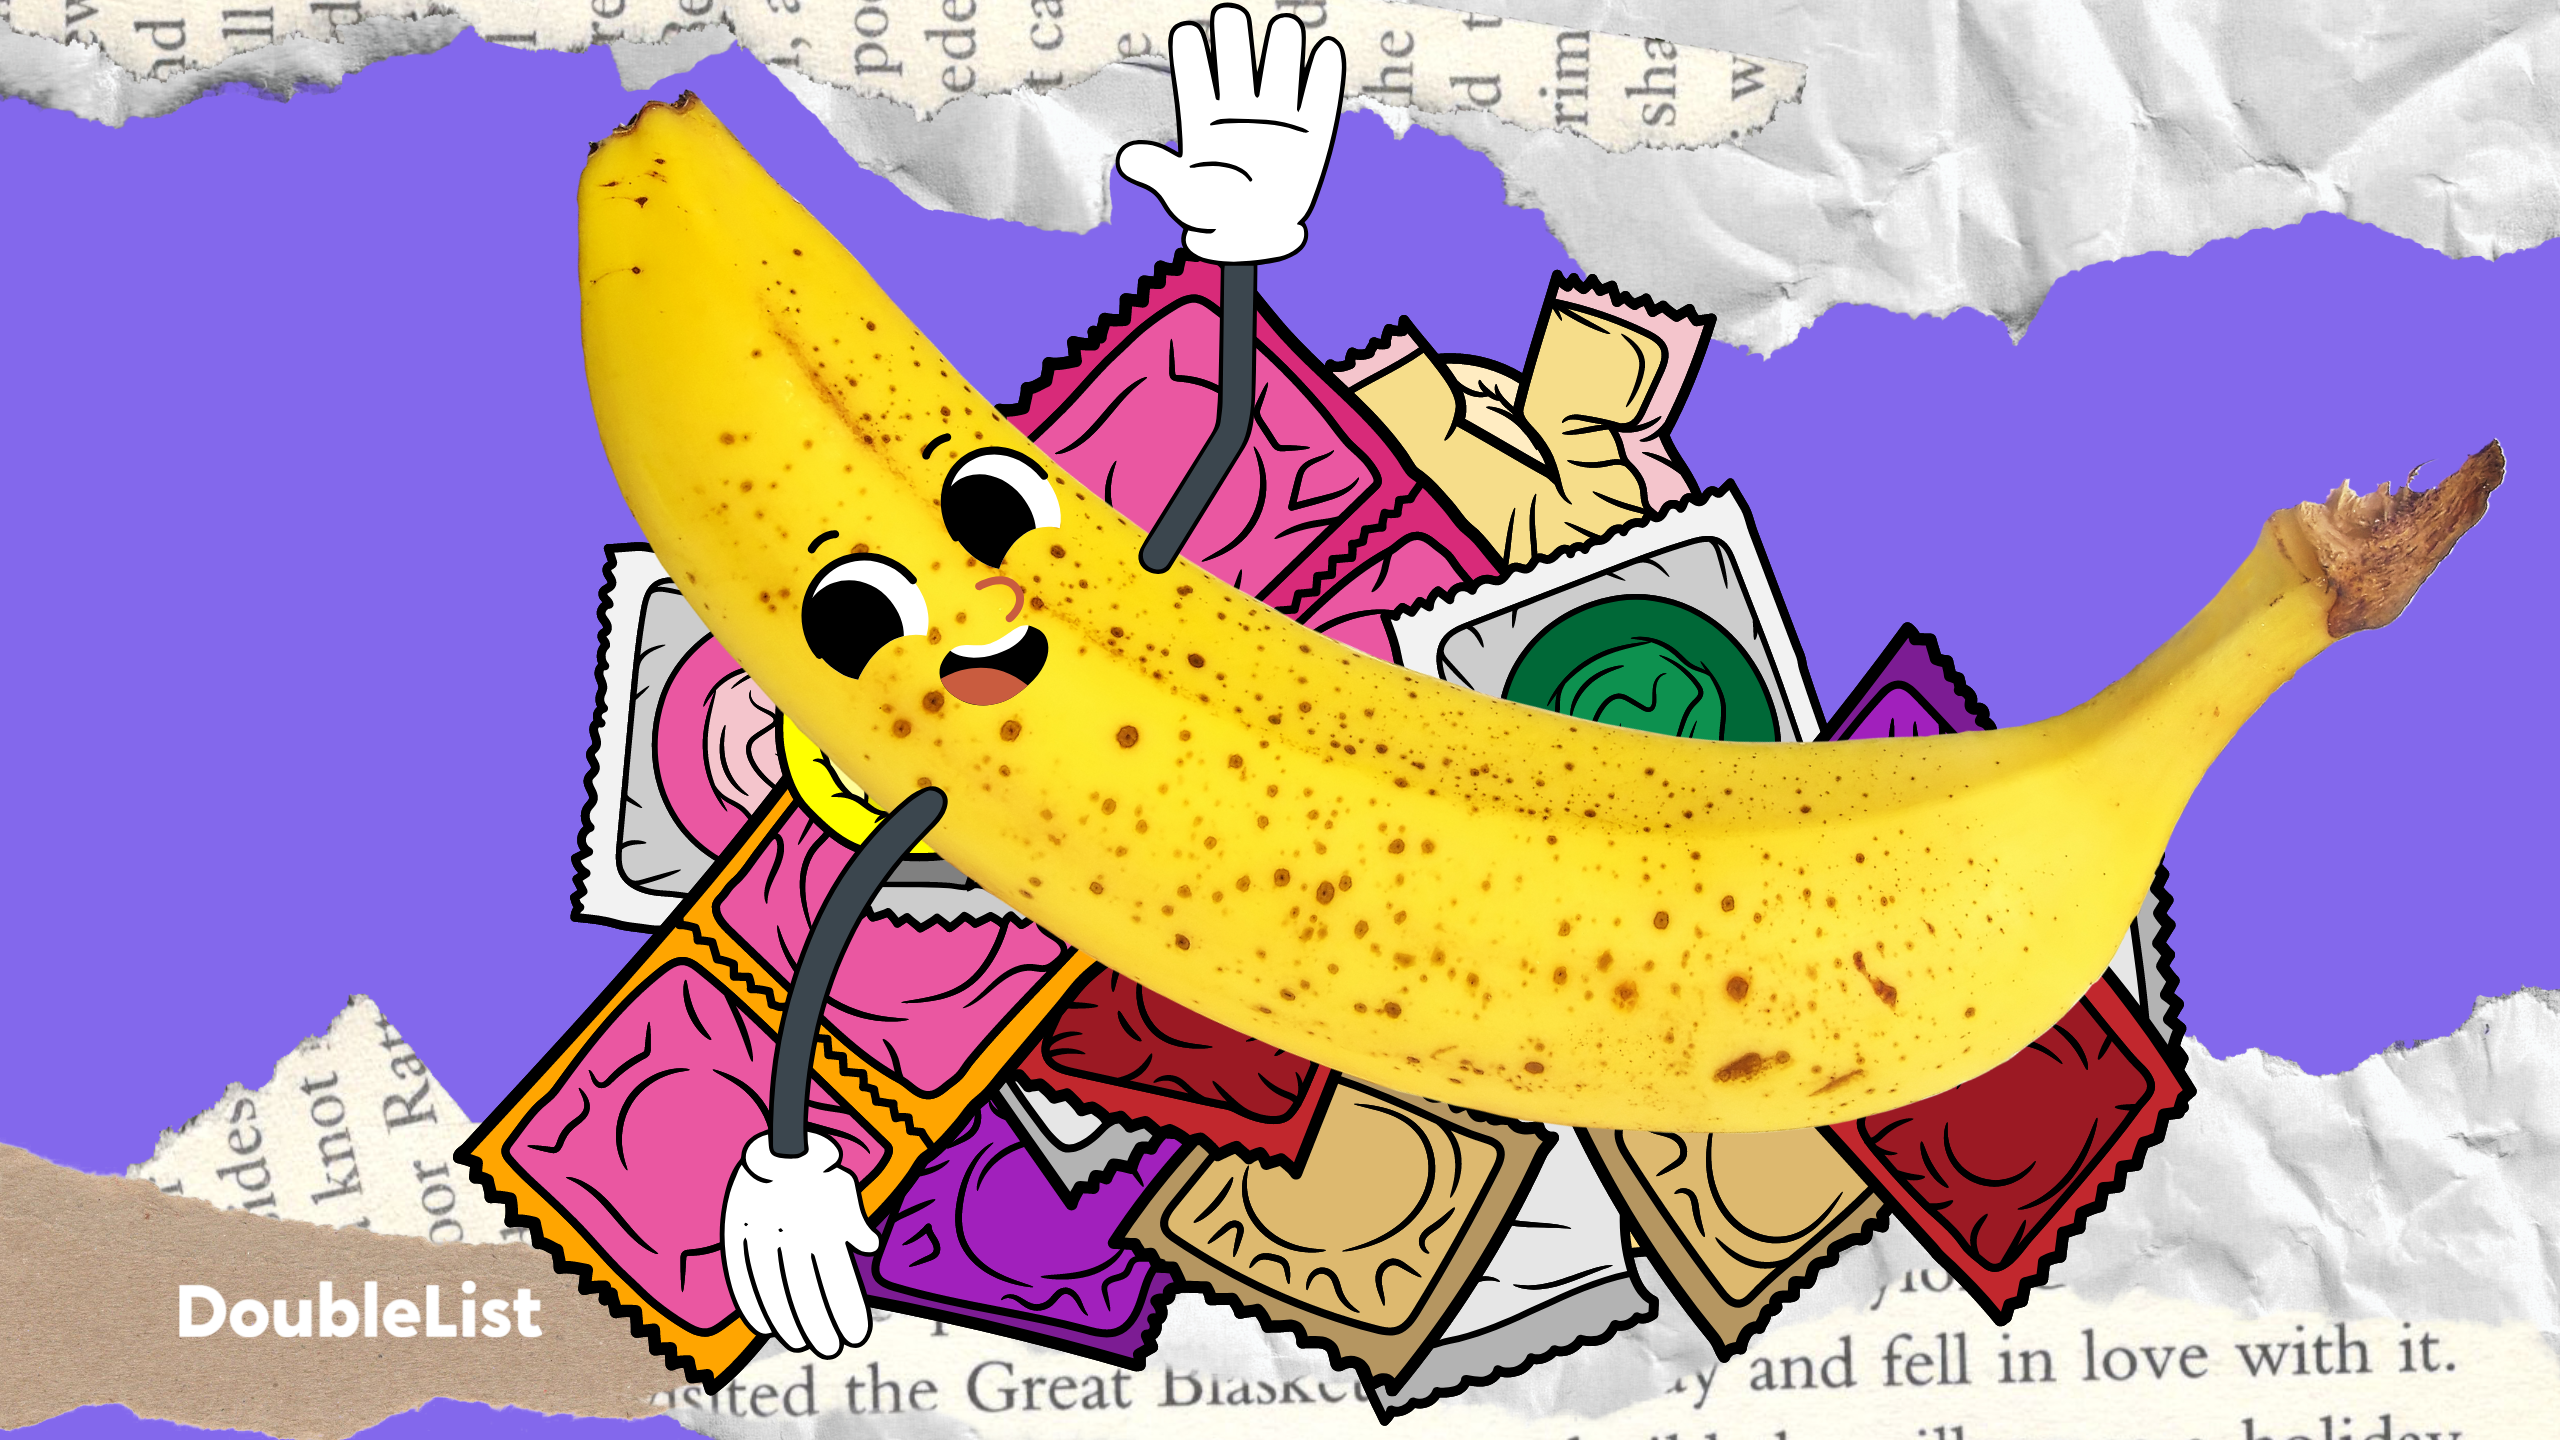 banana on condoms